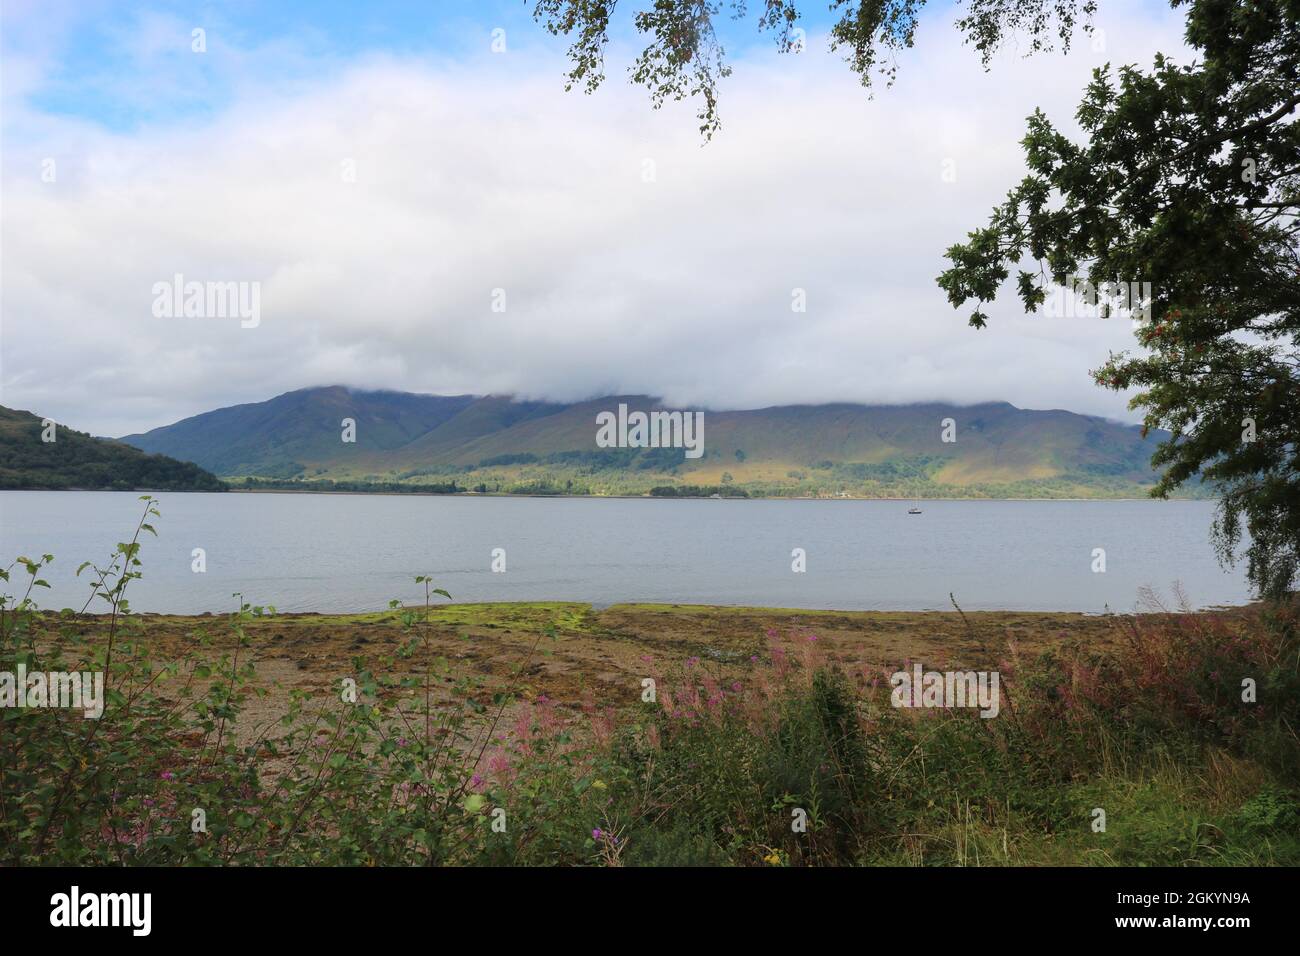 Loch Linnhe, See loch an der Westküste Schottlands. Stockfoto